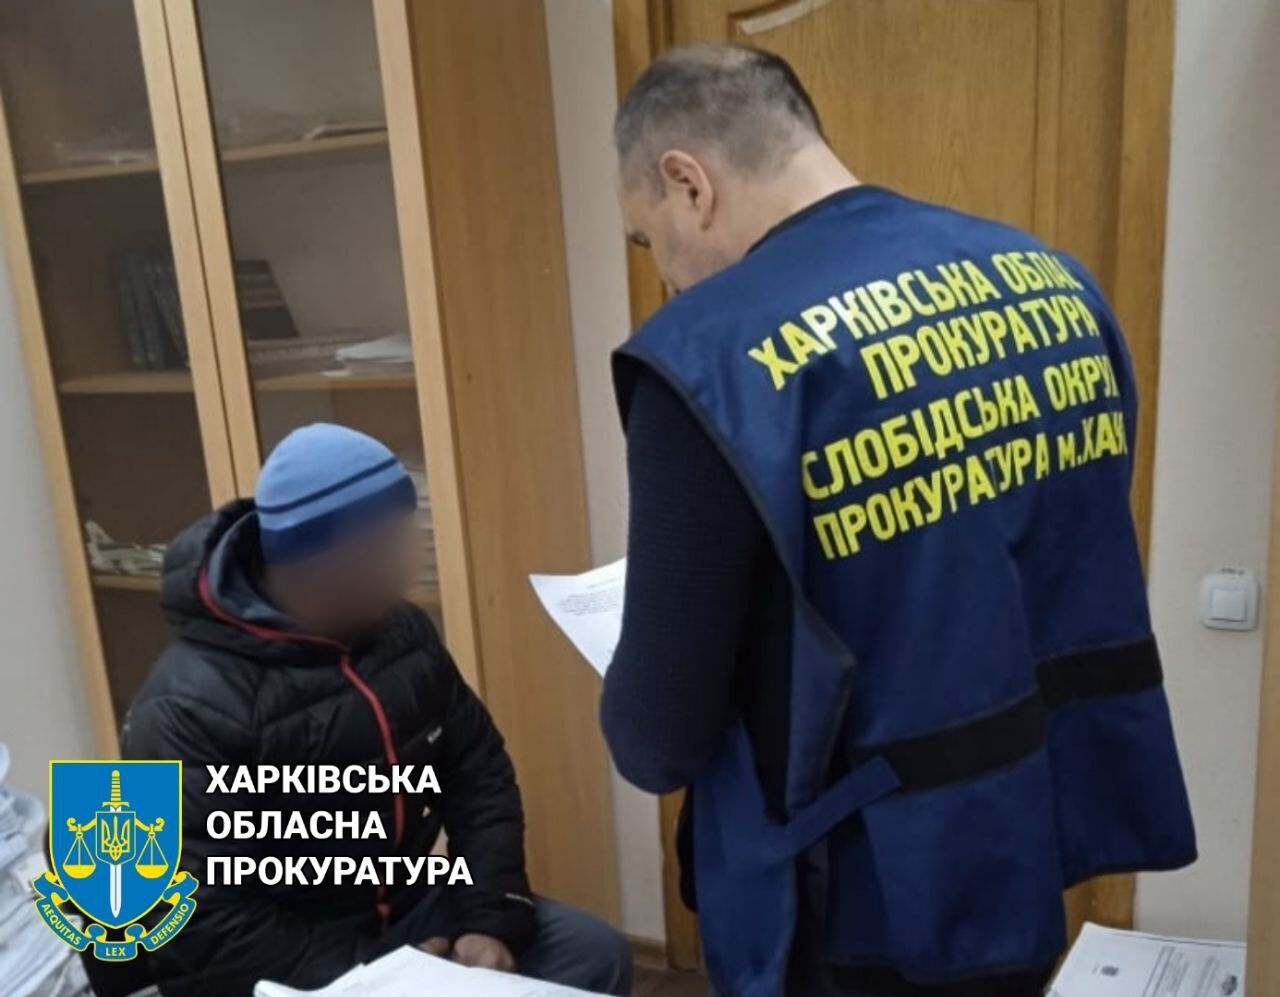 арест предателя в Харьквской области